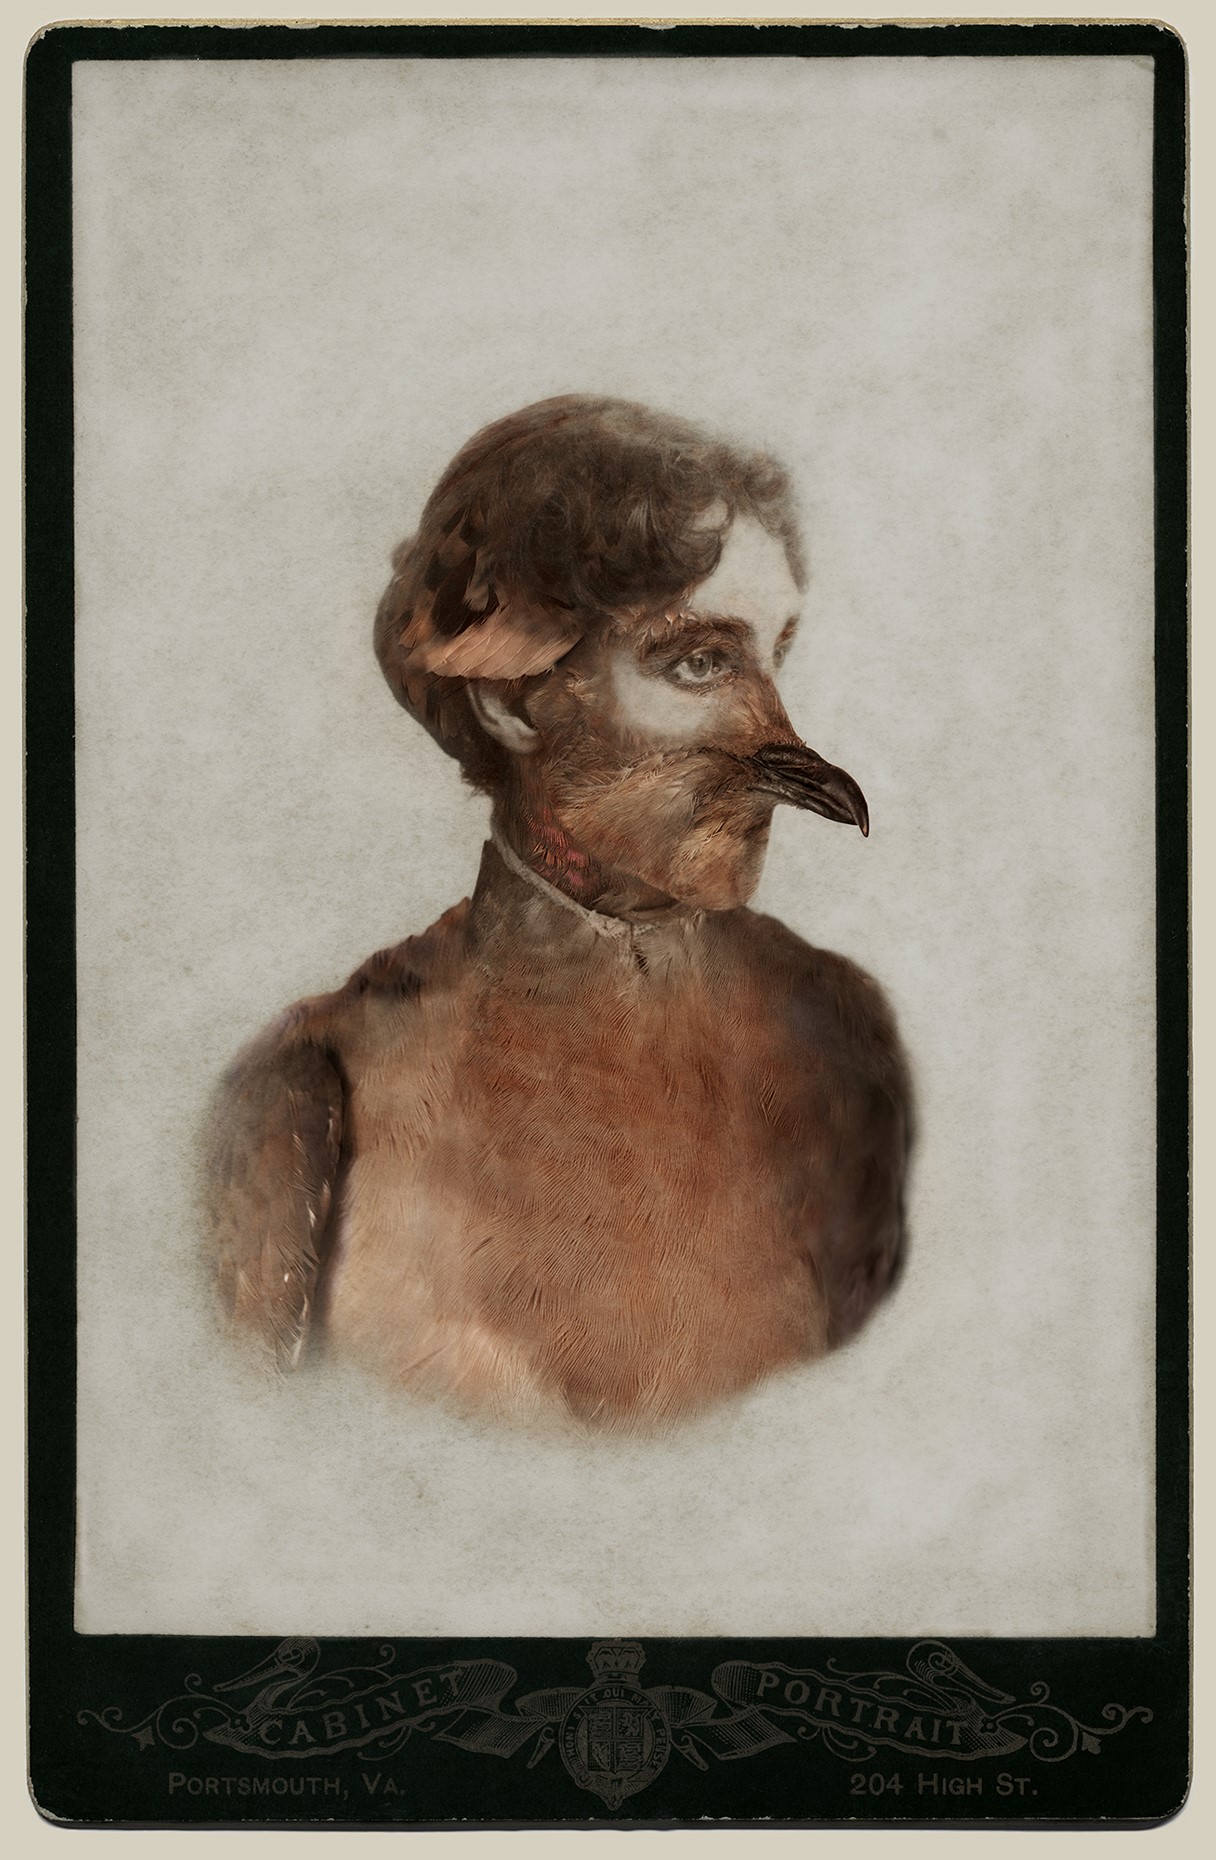     Sara Angelucci, Female Passenger Pigeon/extinct,  26” x 38&#8243;, Aviary Series, chromogenic prints, 2013.

